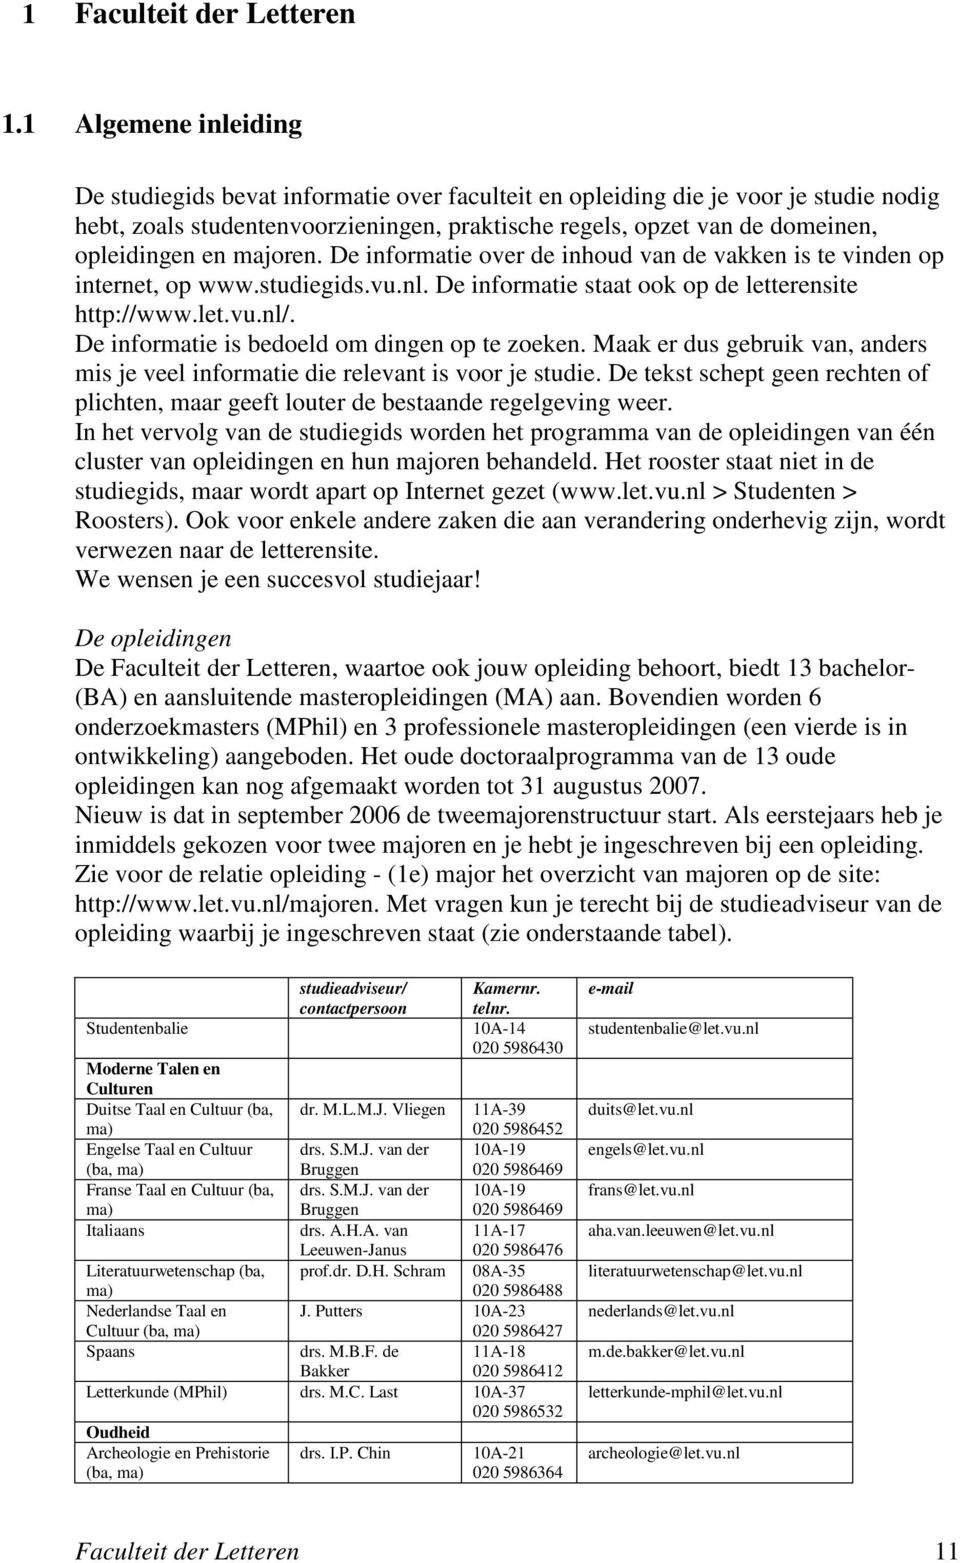 en majoren. De informatie over de inhoud van de vakken is te vinden op internet, op www.studiegids.vu.nl. De informatie staat ook op de letterensite http://www.let.vu.nl/.